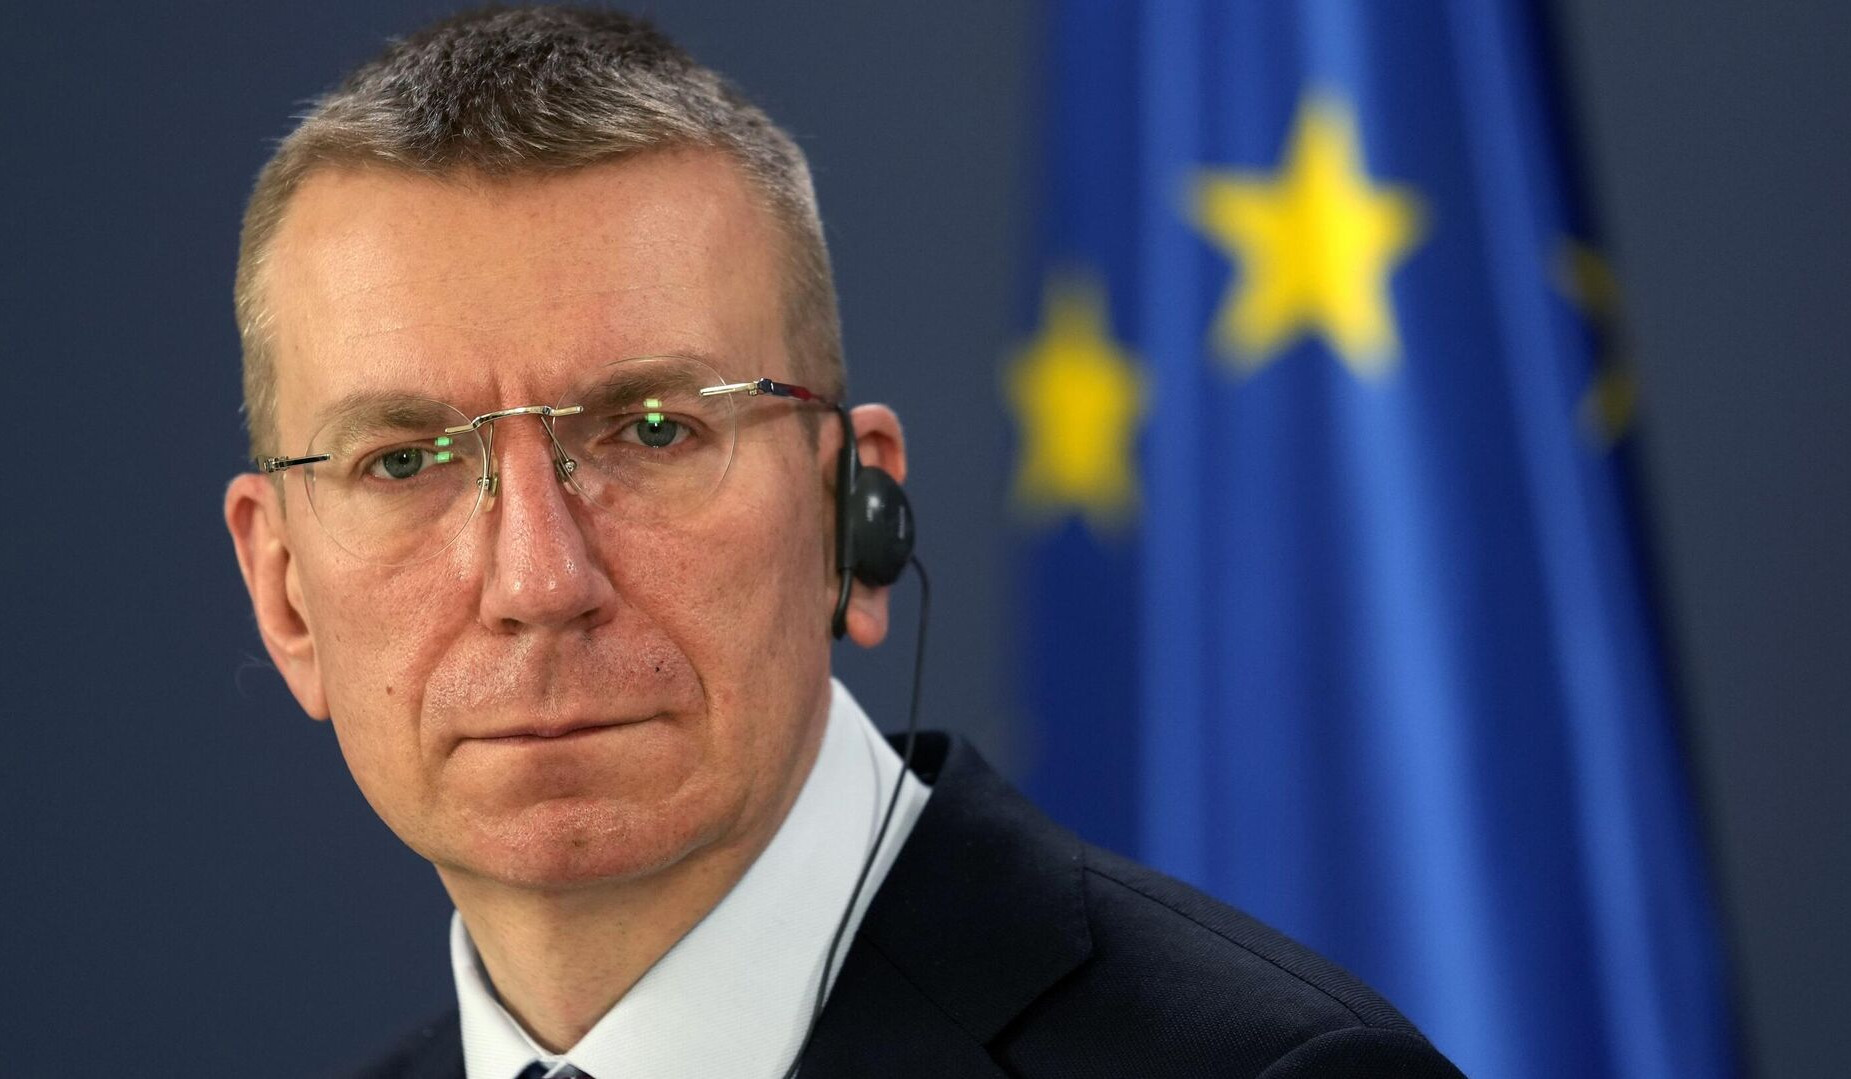 Լատվիայի նախագահը կոչ է արել կասեցնել Վրաստանին Եվրամիության անդամակցելու թեկնածուի կարգավիճակը